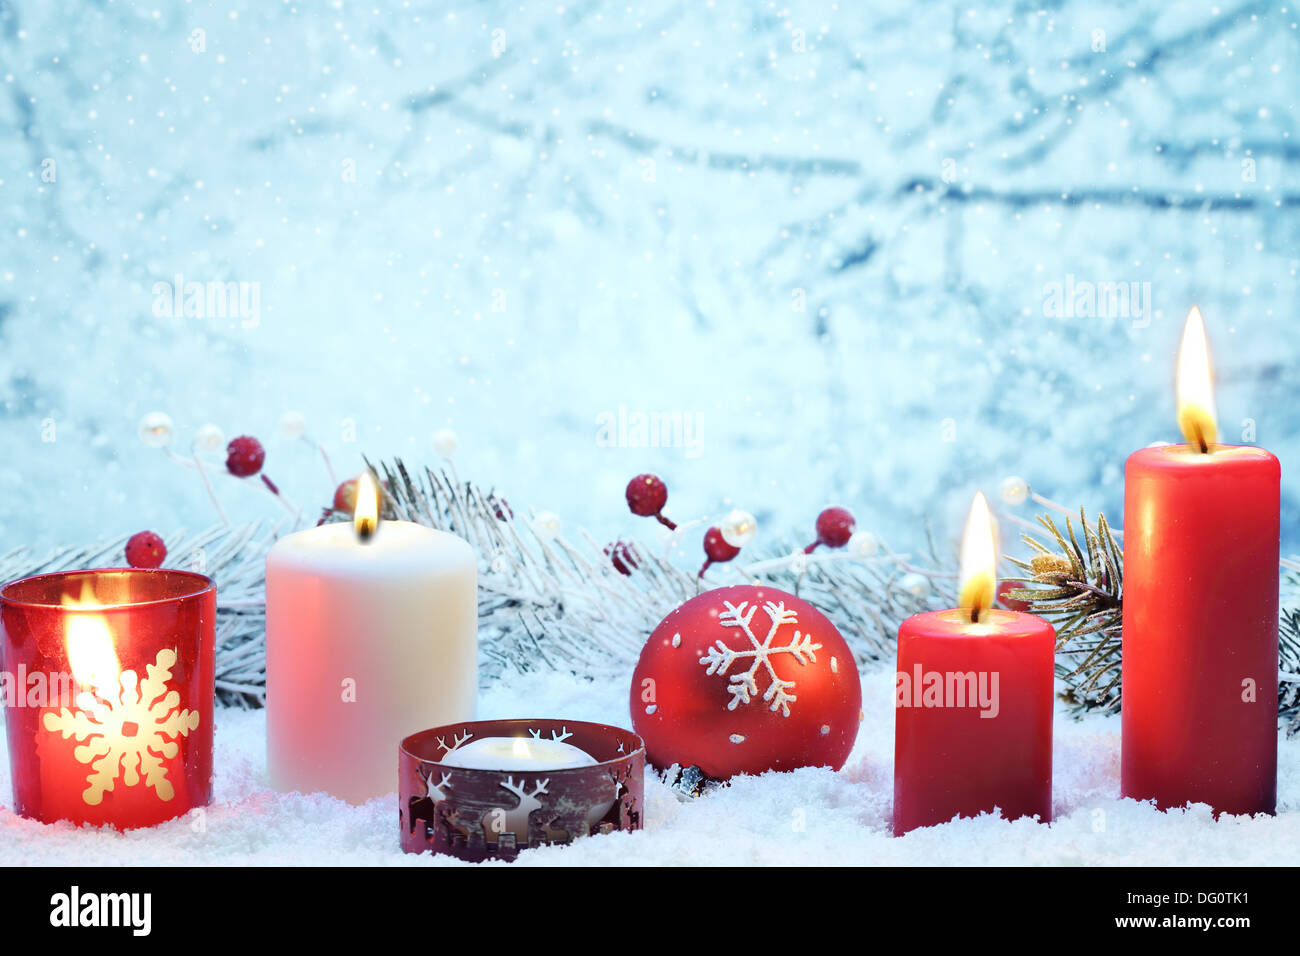 Weihnachts-Dekoration mit Kerzen und Ball auf Schnee. Stockfoto